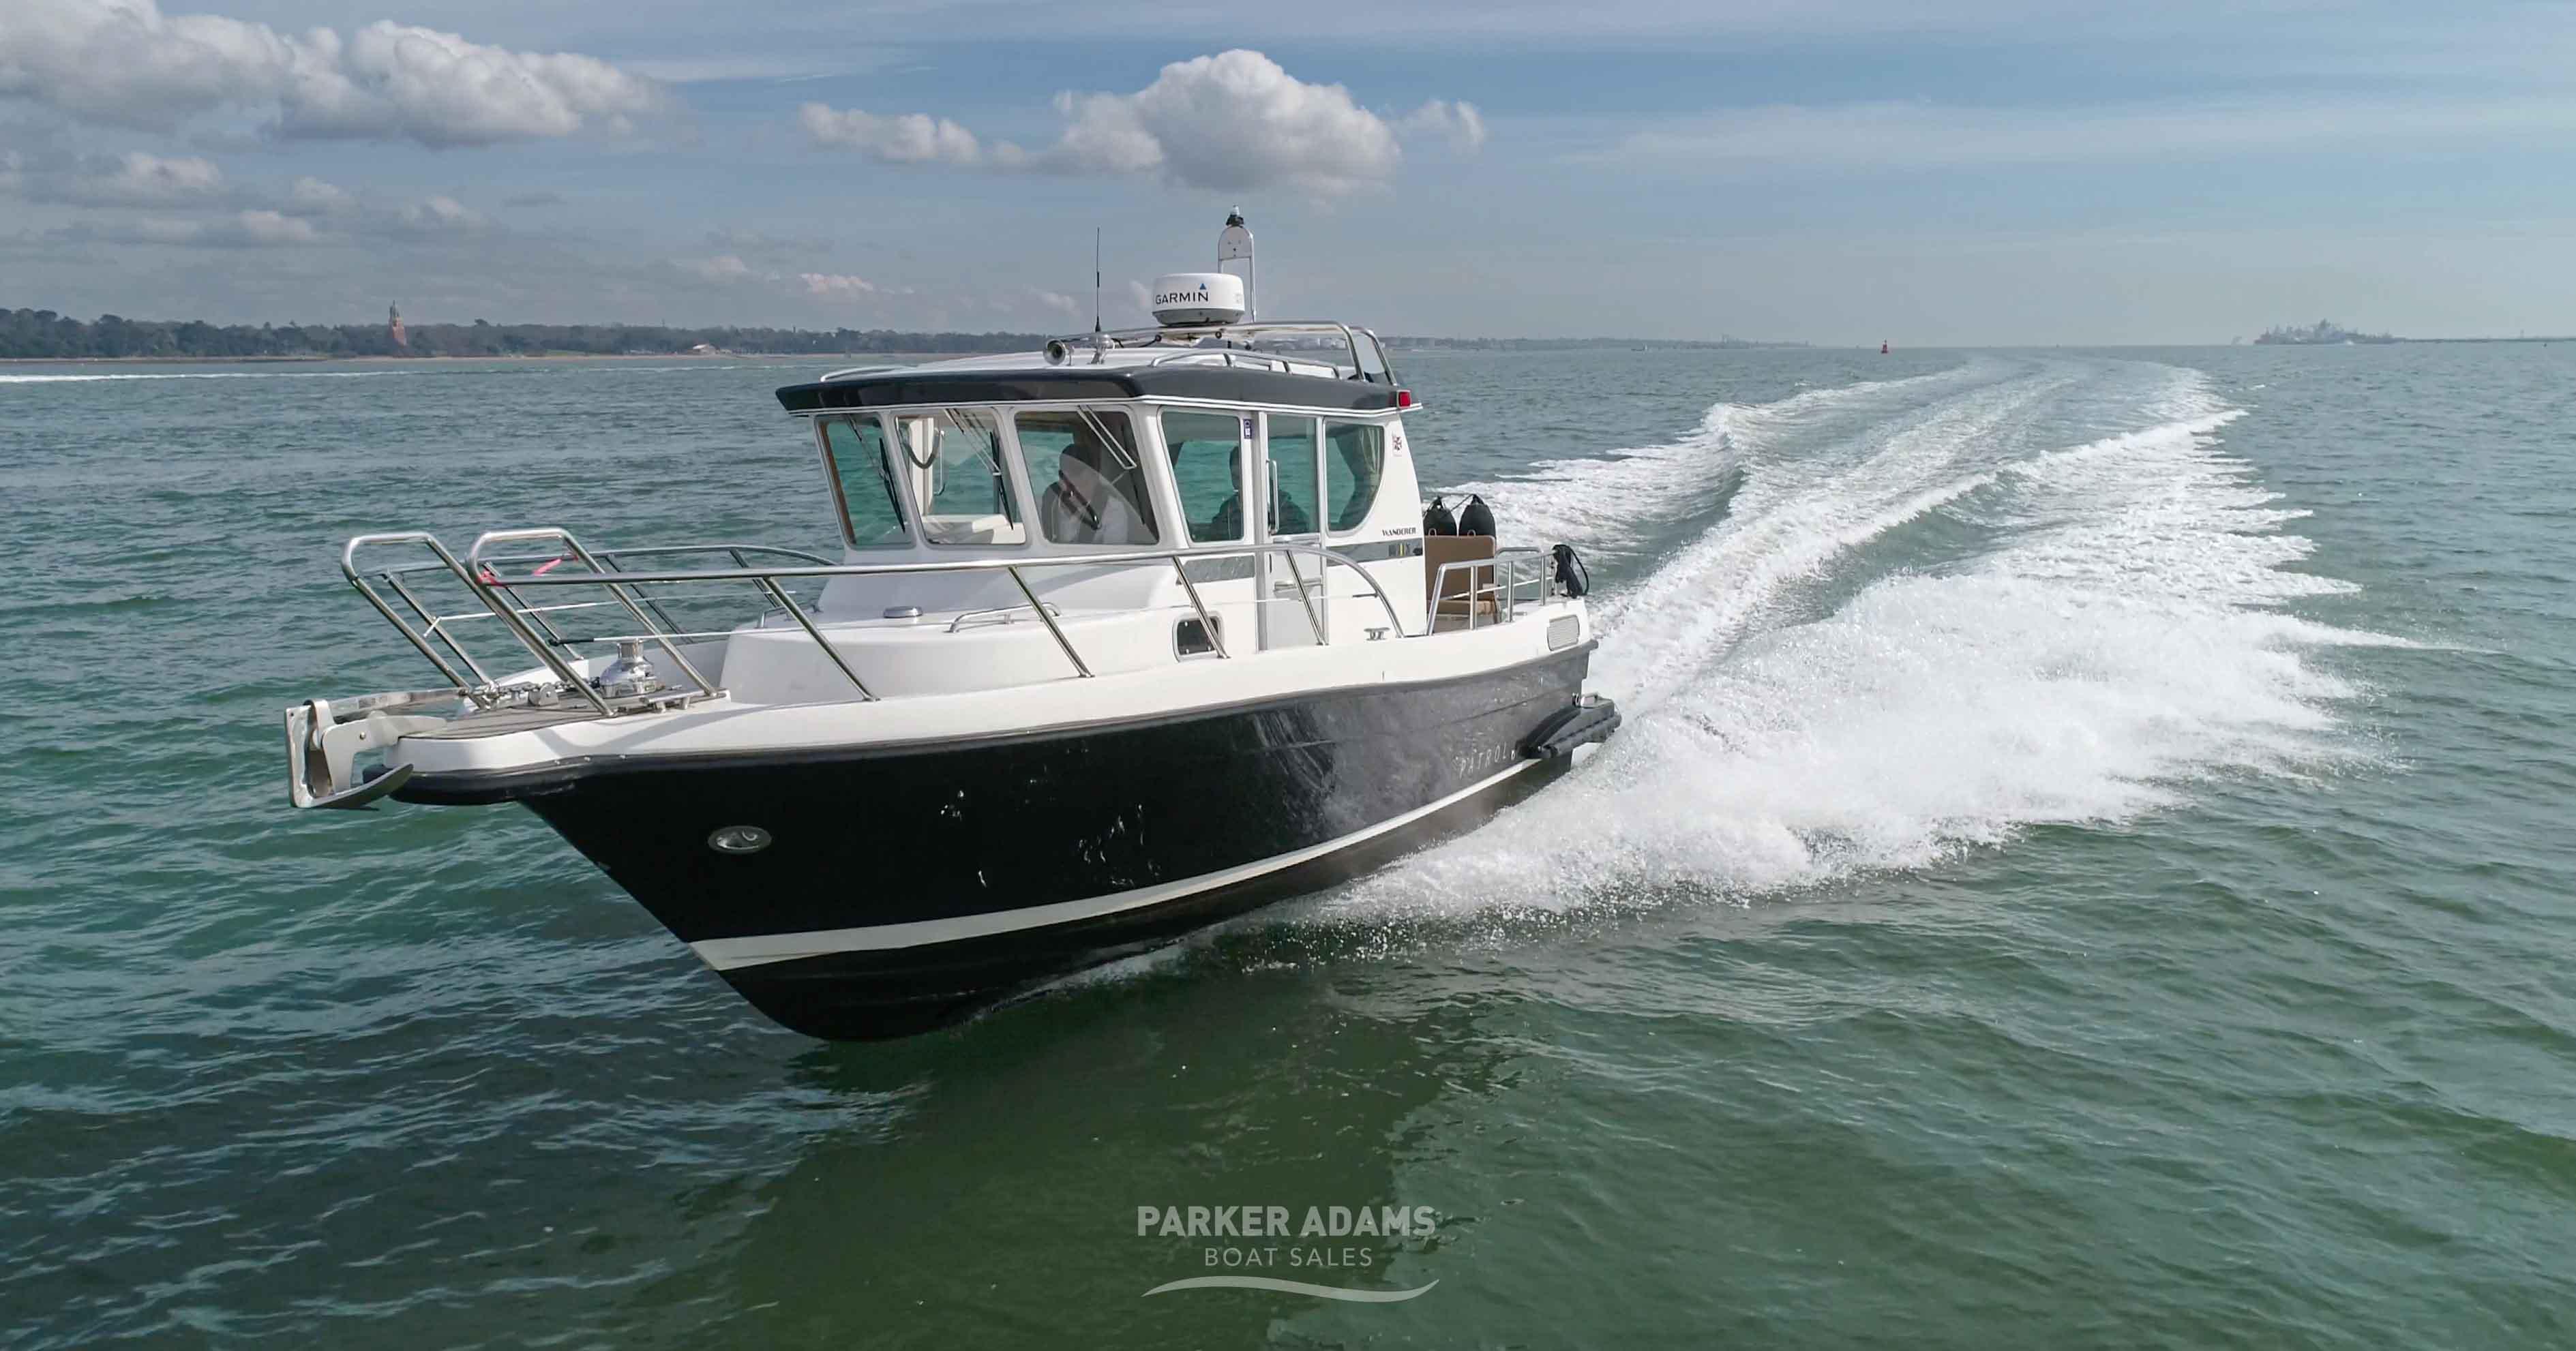 Sargo Used Boats - Parker Adams Boat Sales